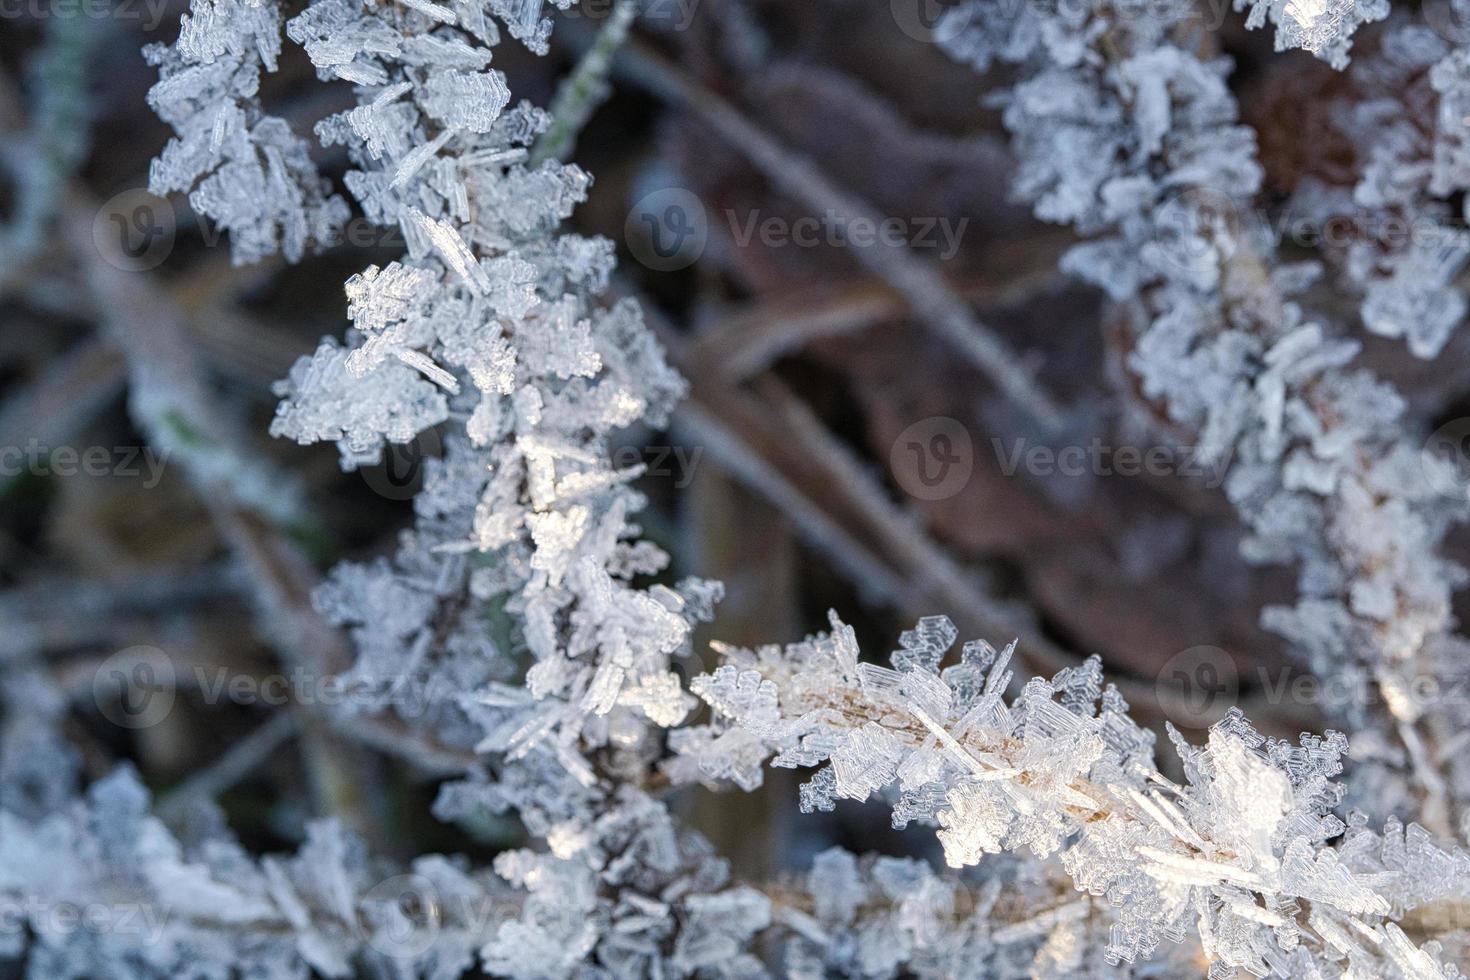 cristais de gelo que se formaram em folhas de grama. formas estruturalmente ricas e bizarras surgiram. foto